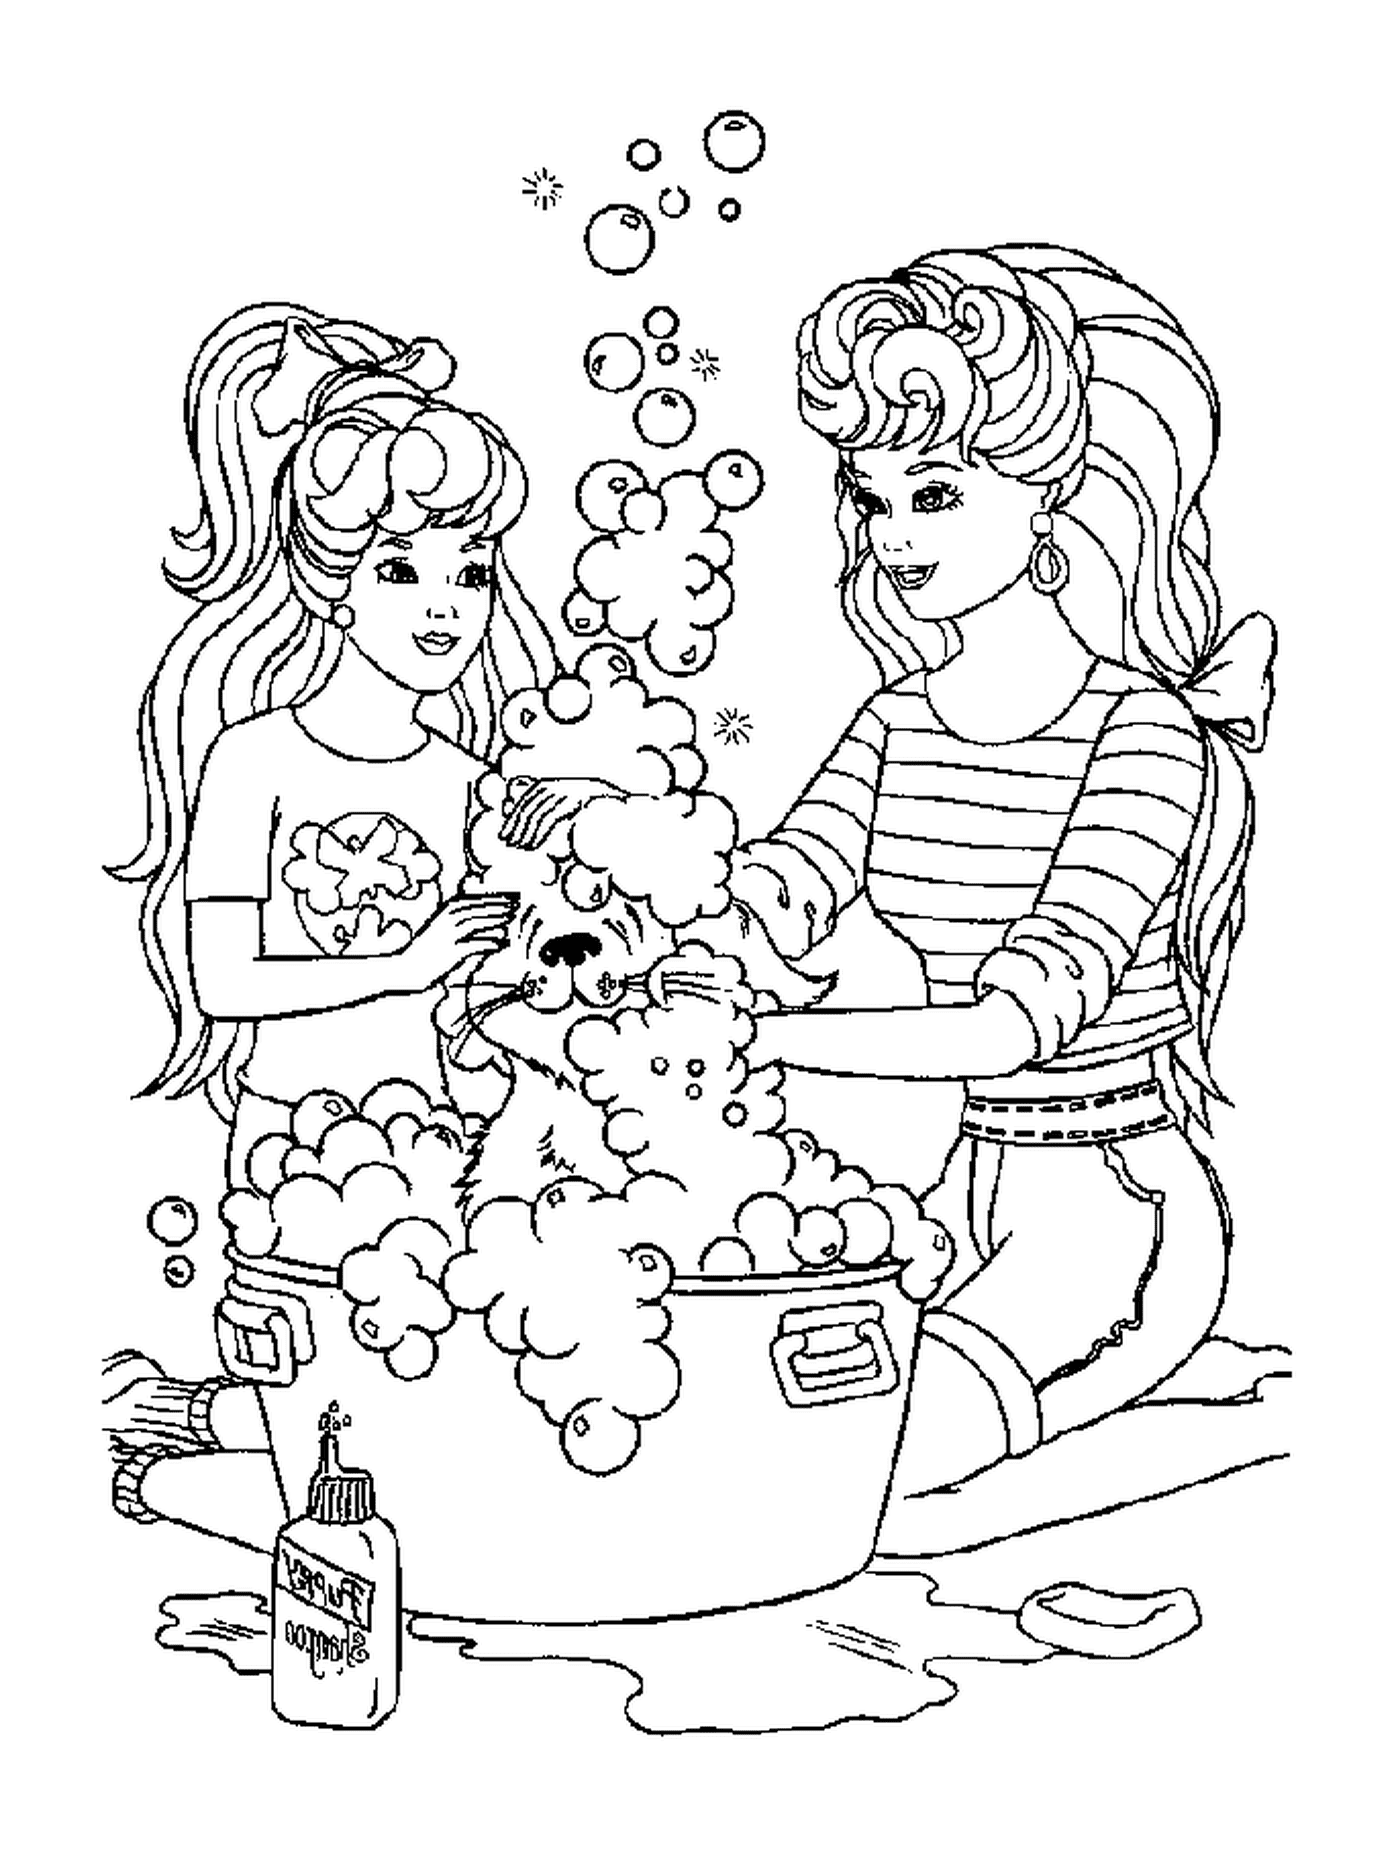   Deux jeunes filles jouent avec des bulles de savon 